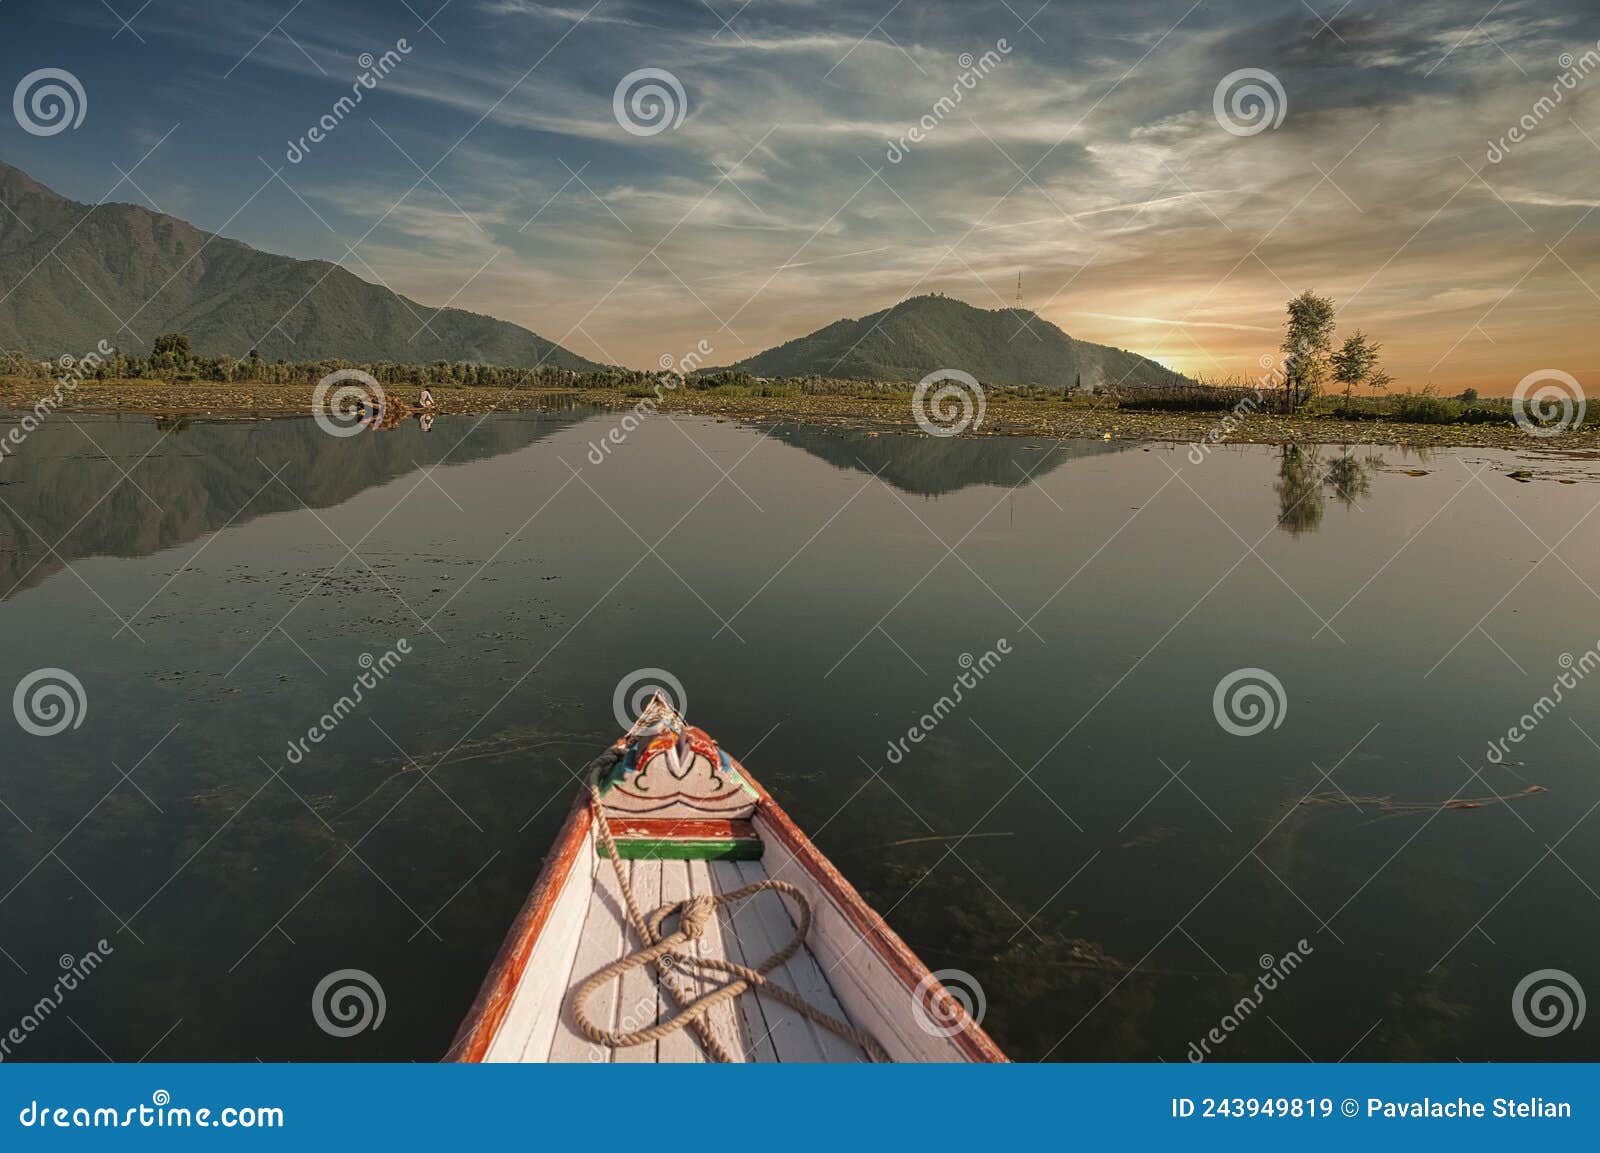 shikara boats in dal lake, srinagar, kashmir